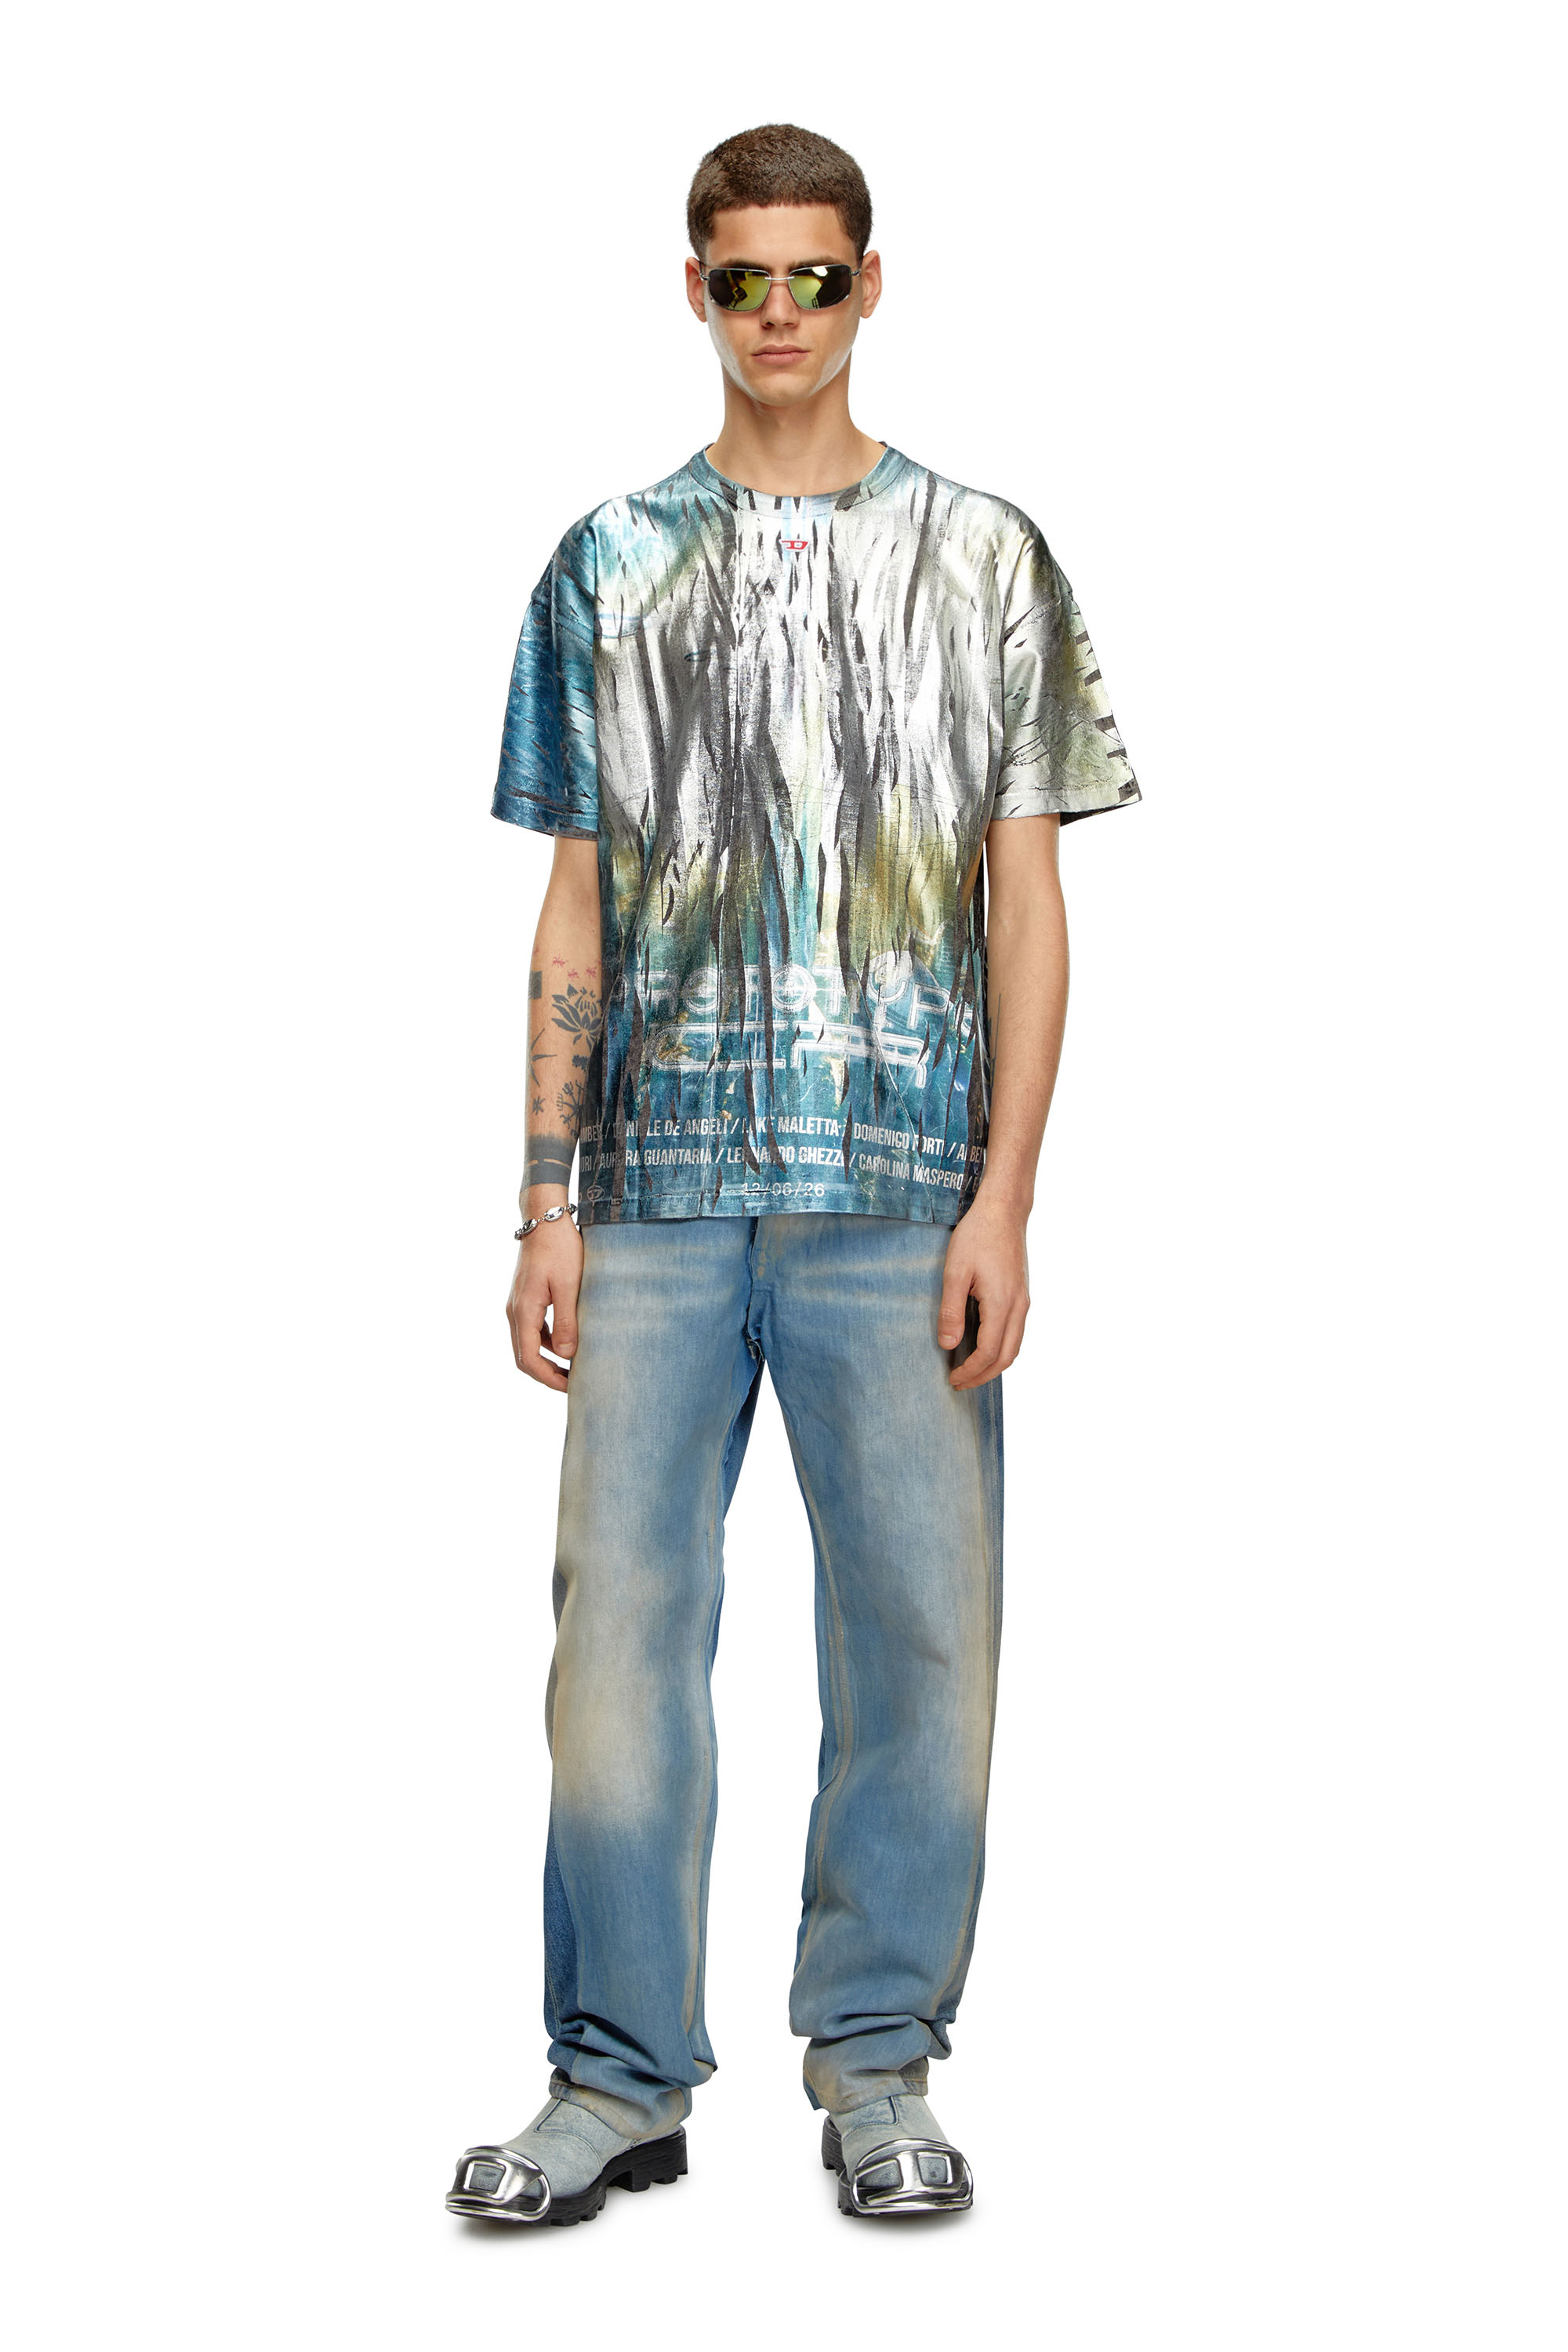 Diesel - T-BORD-Q1, Hombre Camiseta con tratamiento de lámina arrugada in Multicolor - Image 2